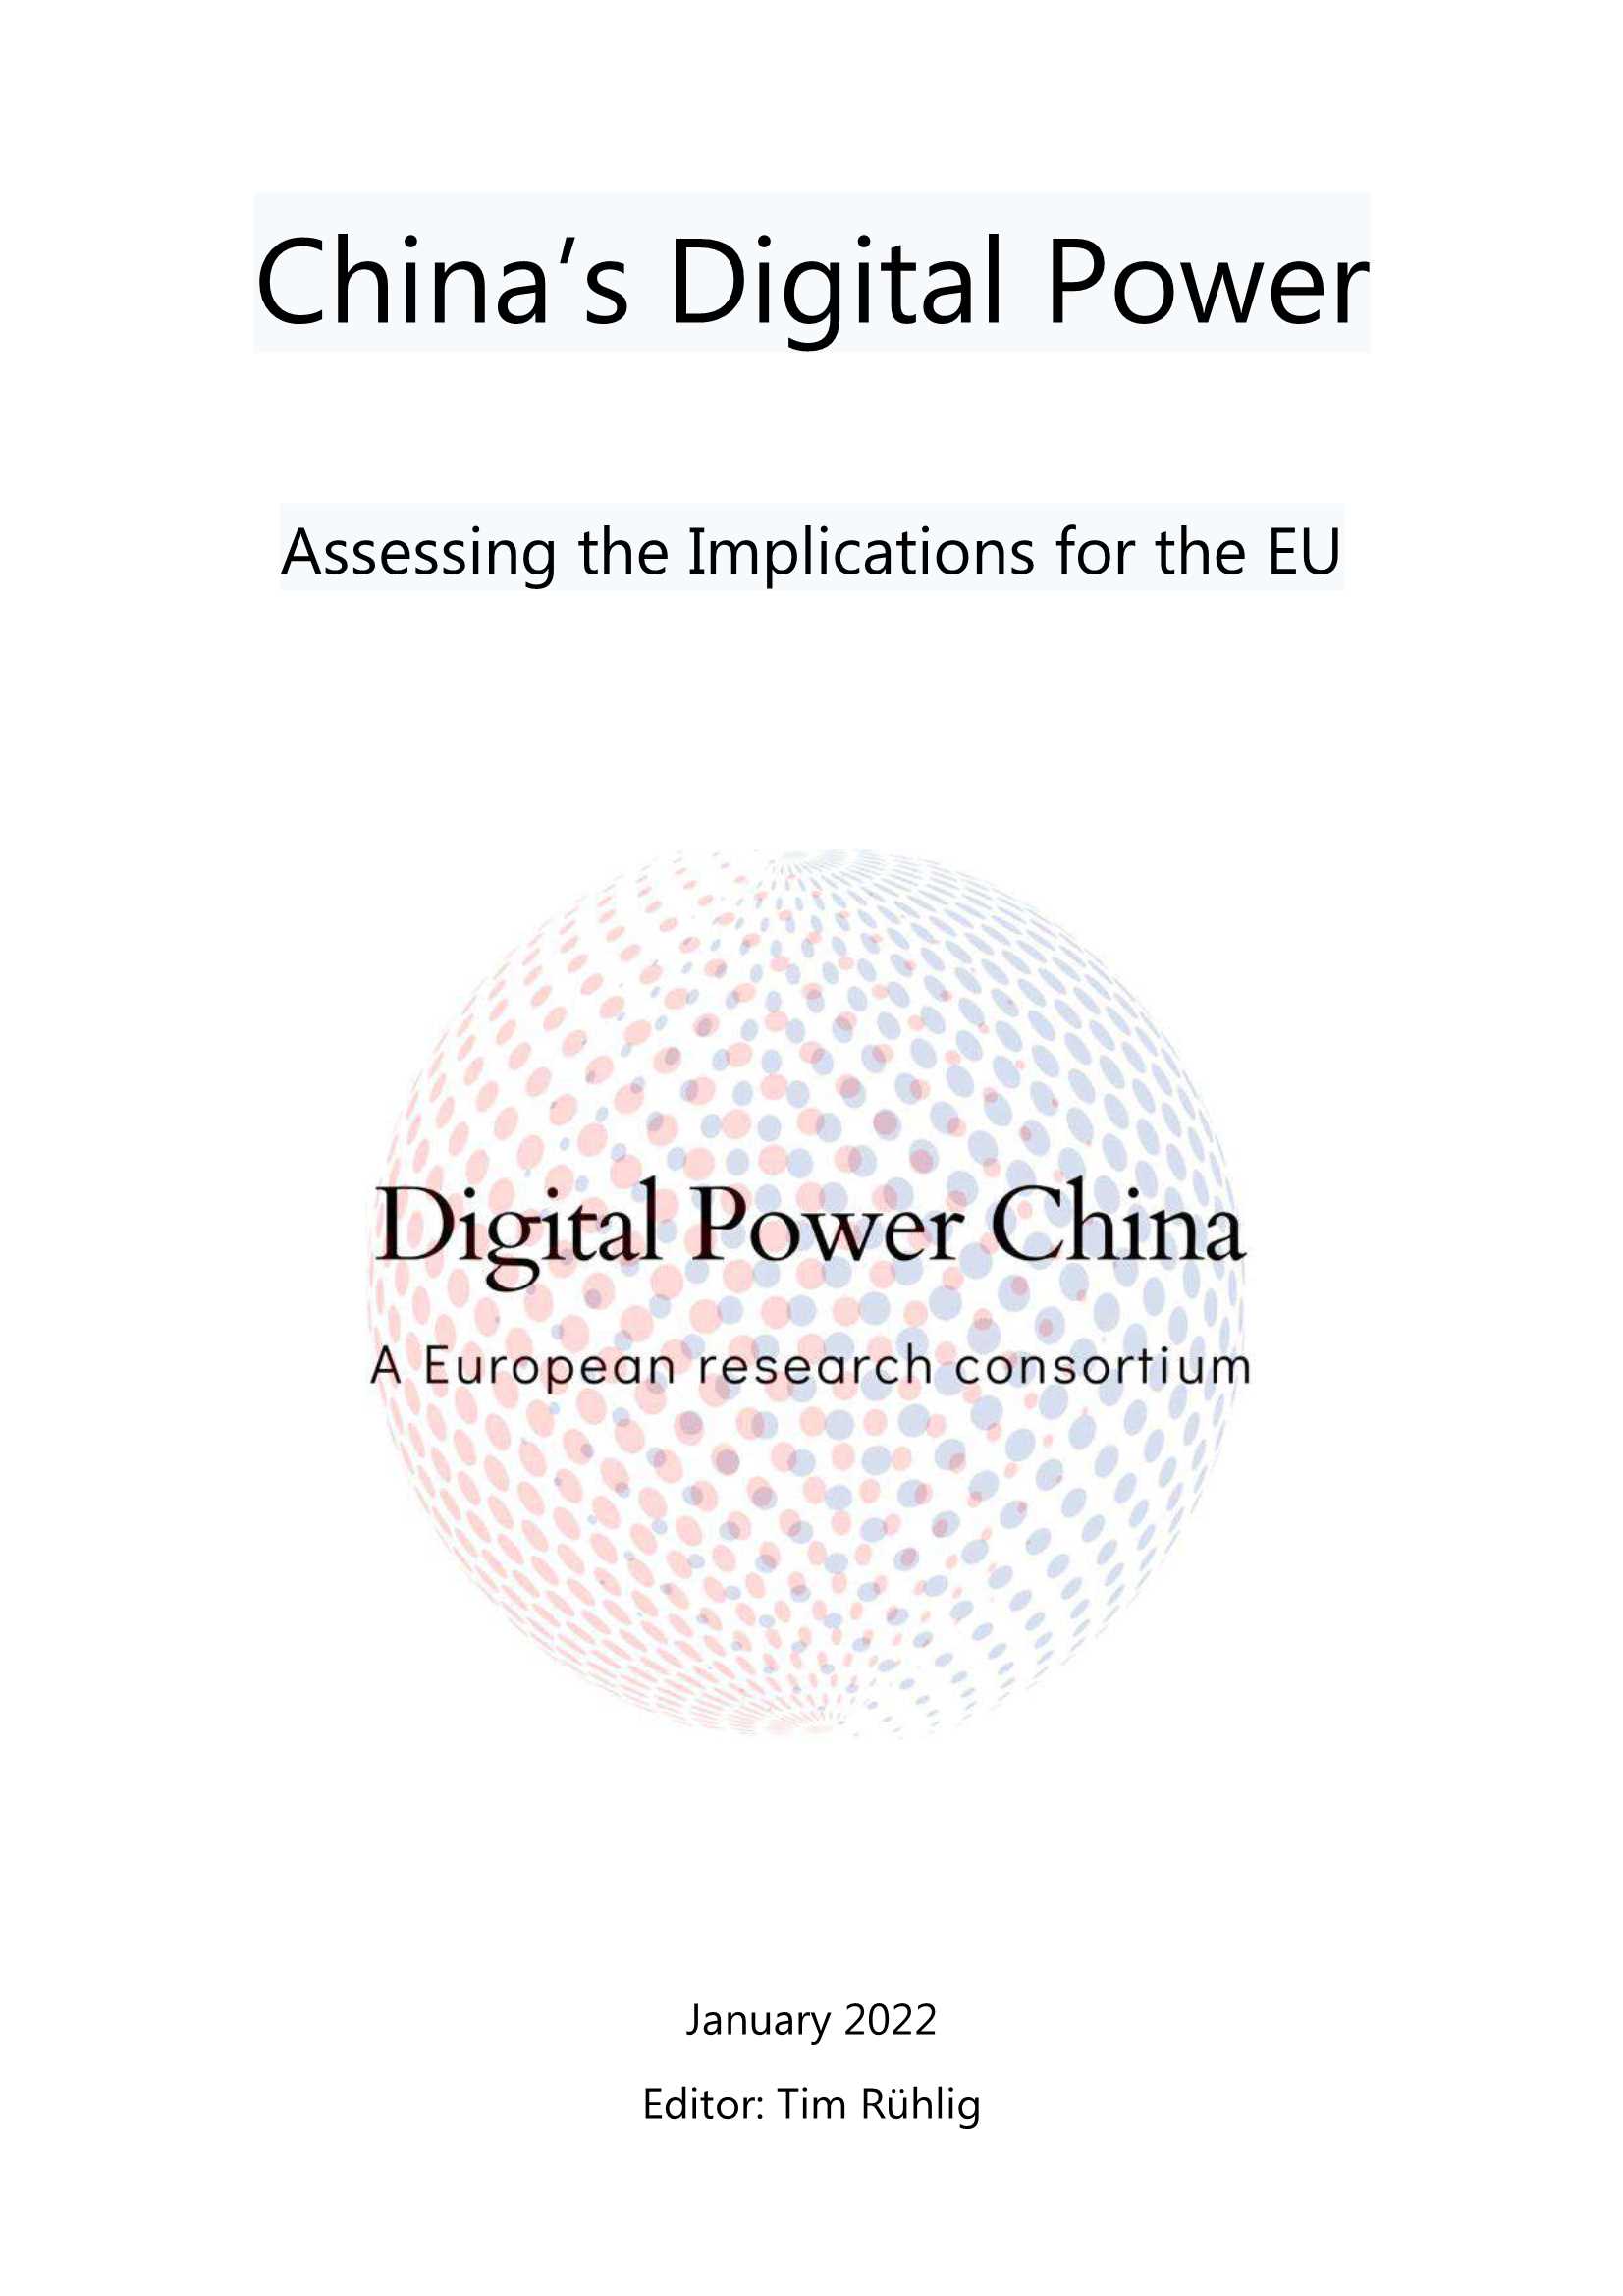 德国外交关系理事会-中国的数字力量对欧盟的影响评估（英）-2022.02-106页